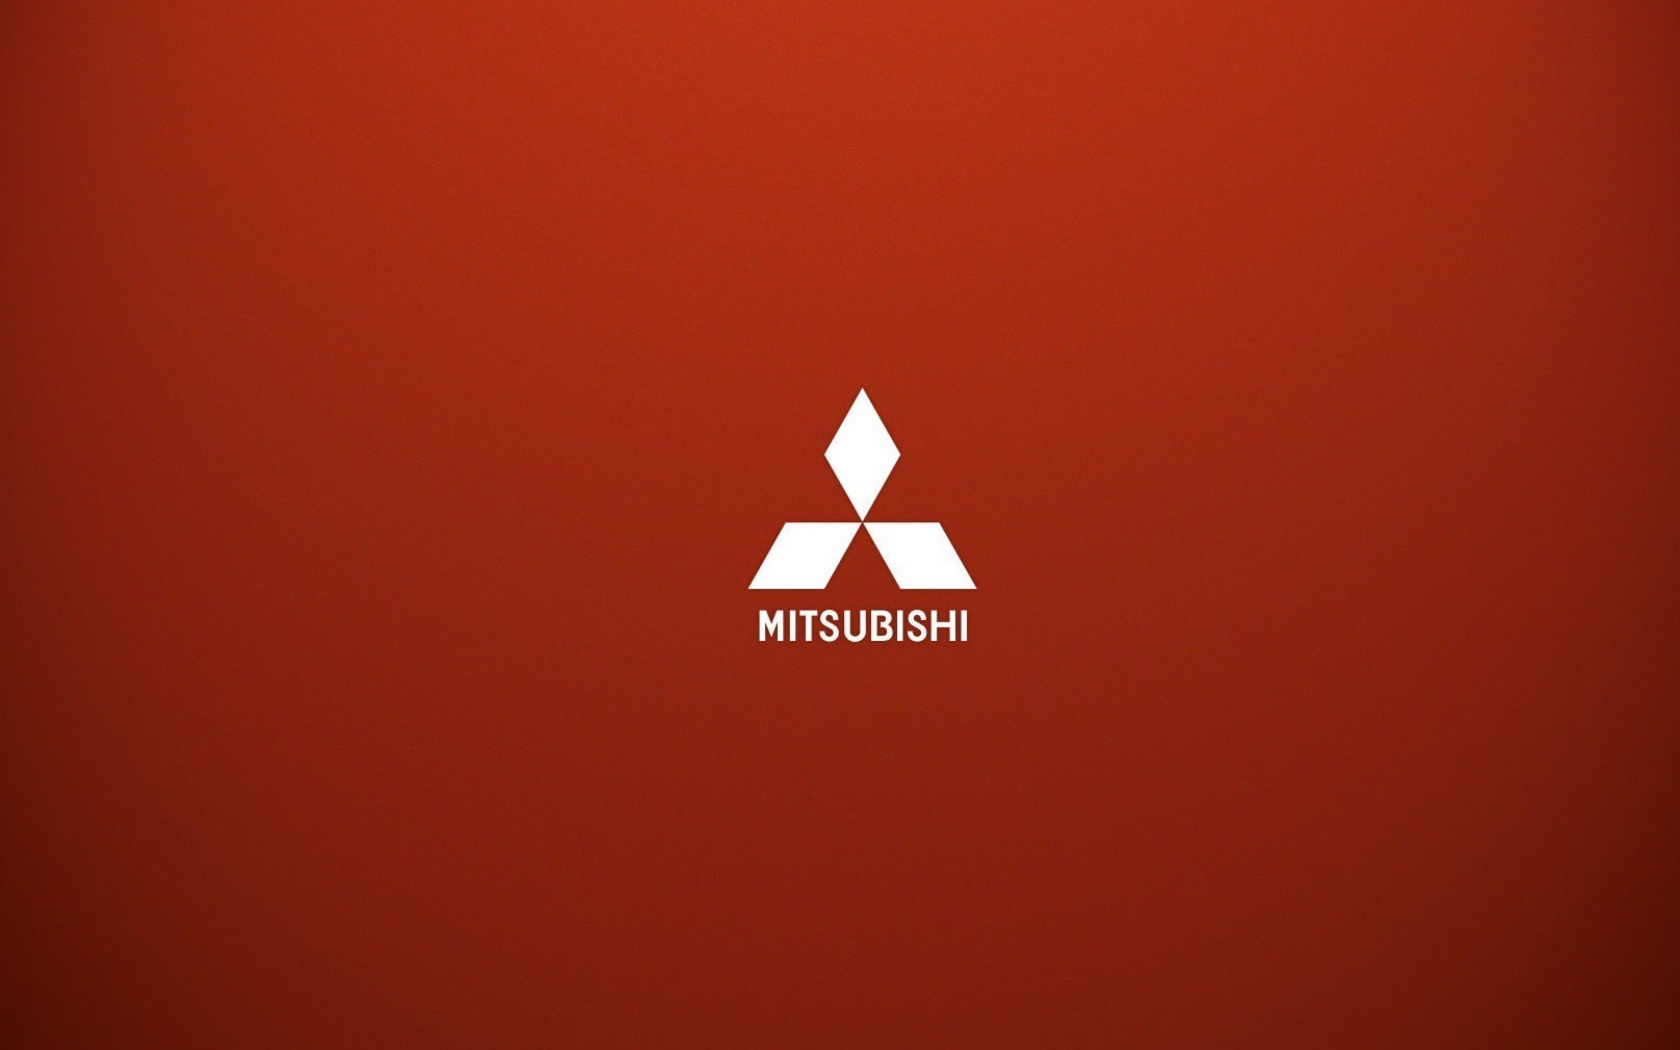 Das Mitsubishi logo Wallpaper 1680x1050